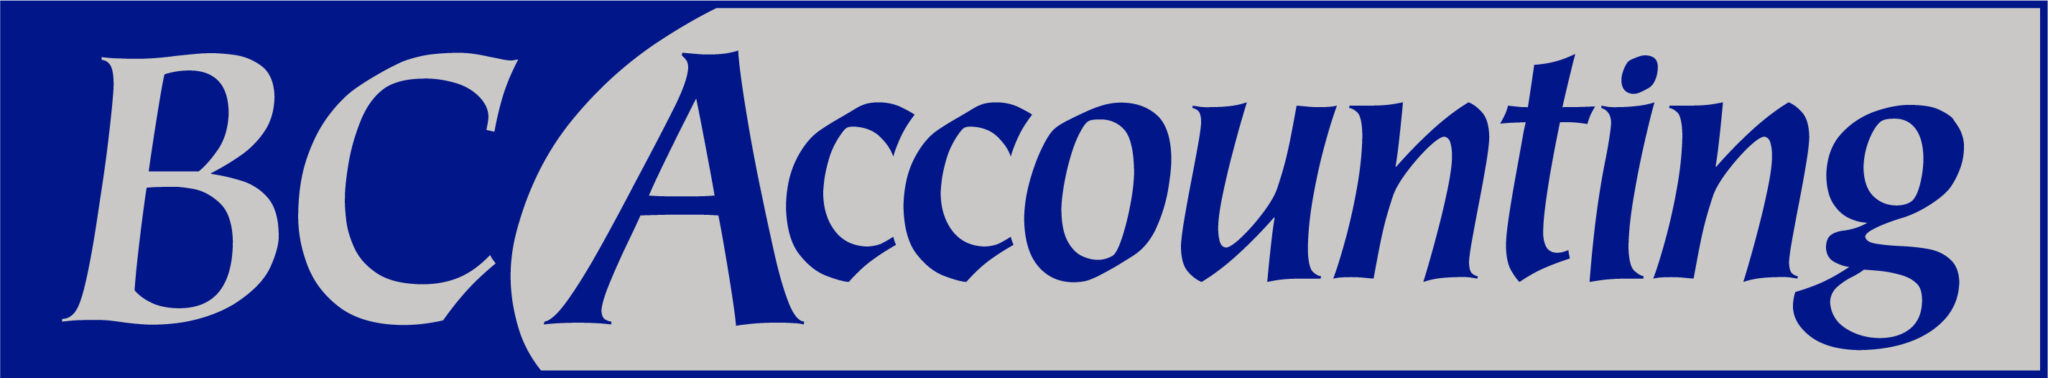 BC Accounting Inc logo